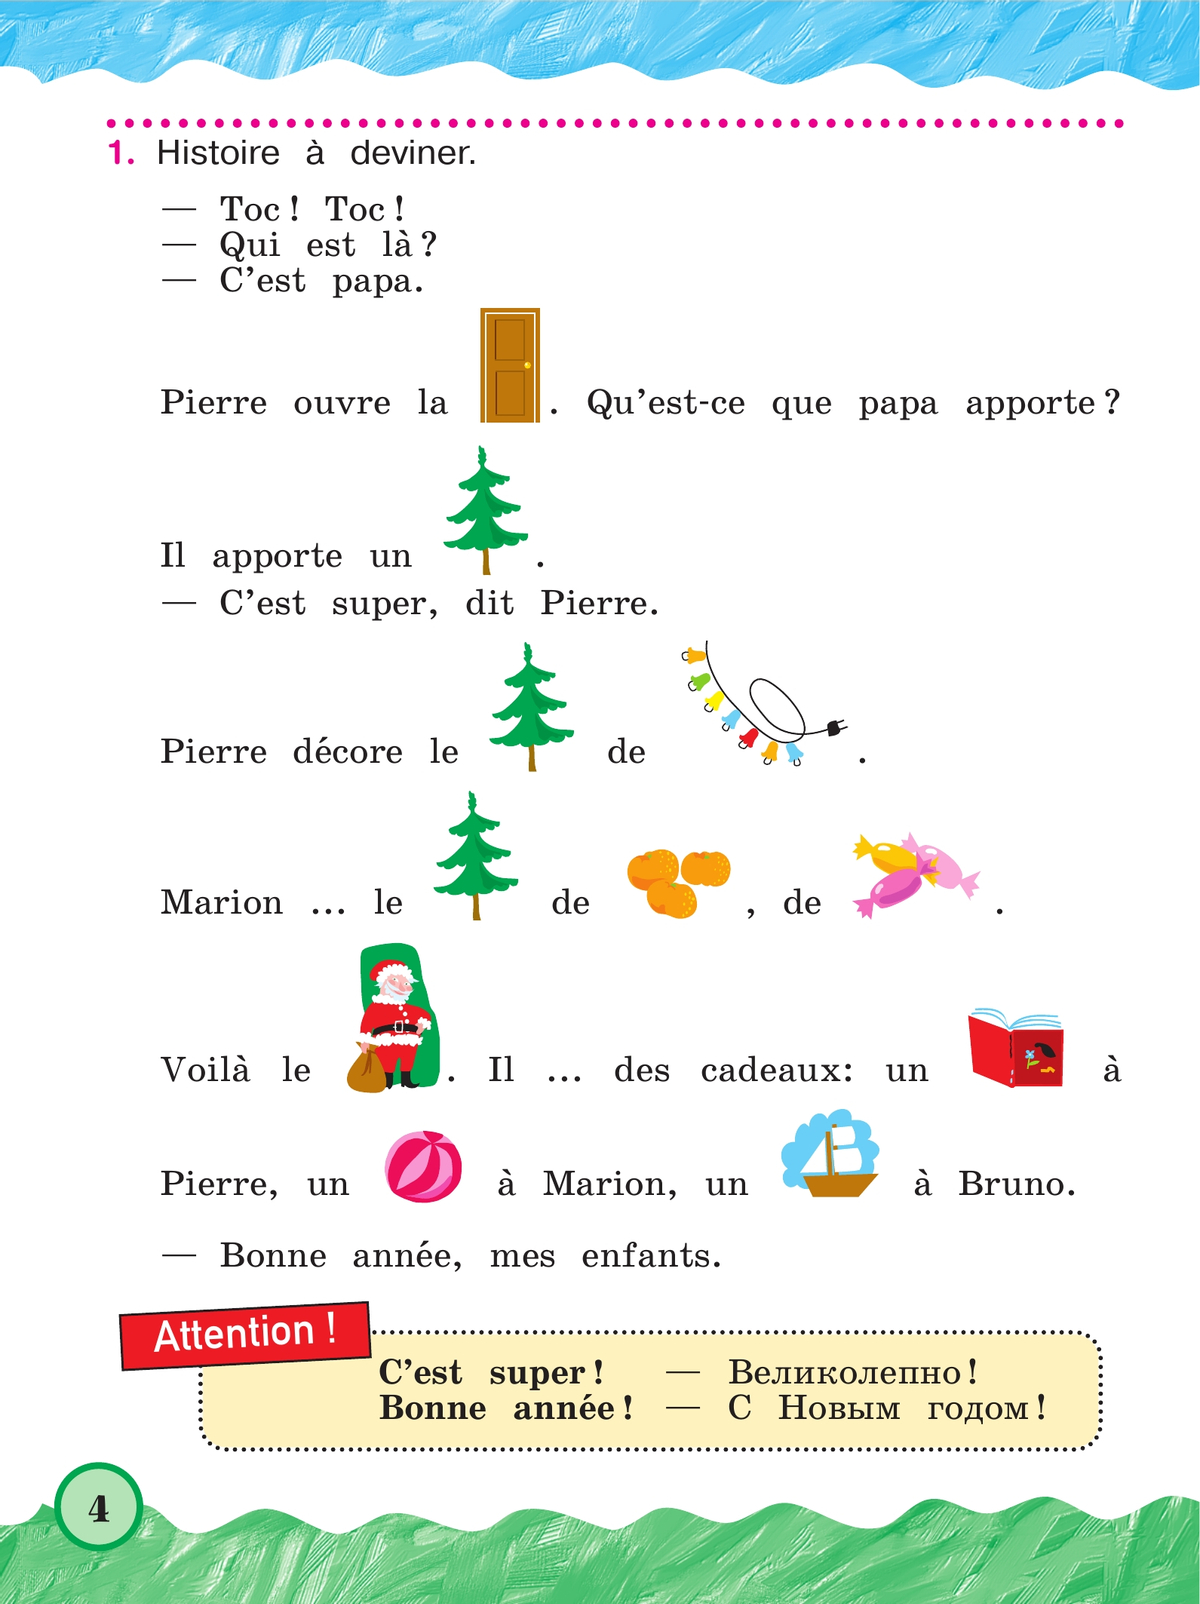 Французский язык. 2 класс. Учебник. В 2 ч. Часть 2. Углублённый уровень 4